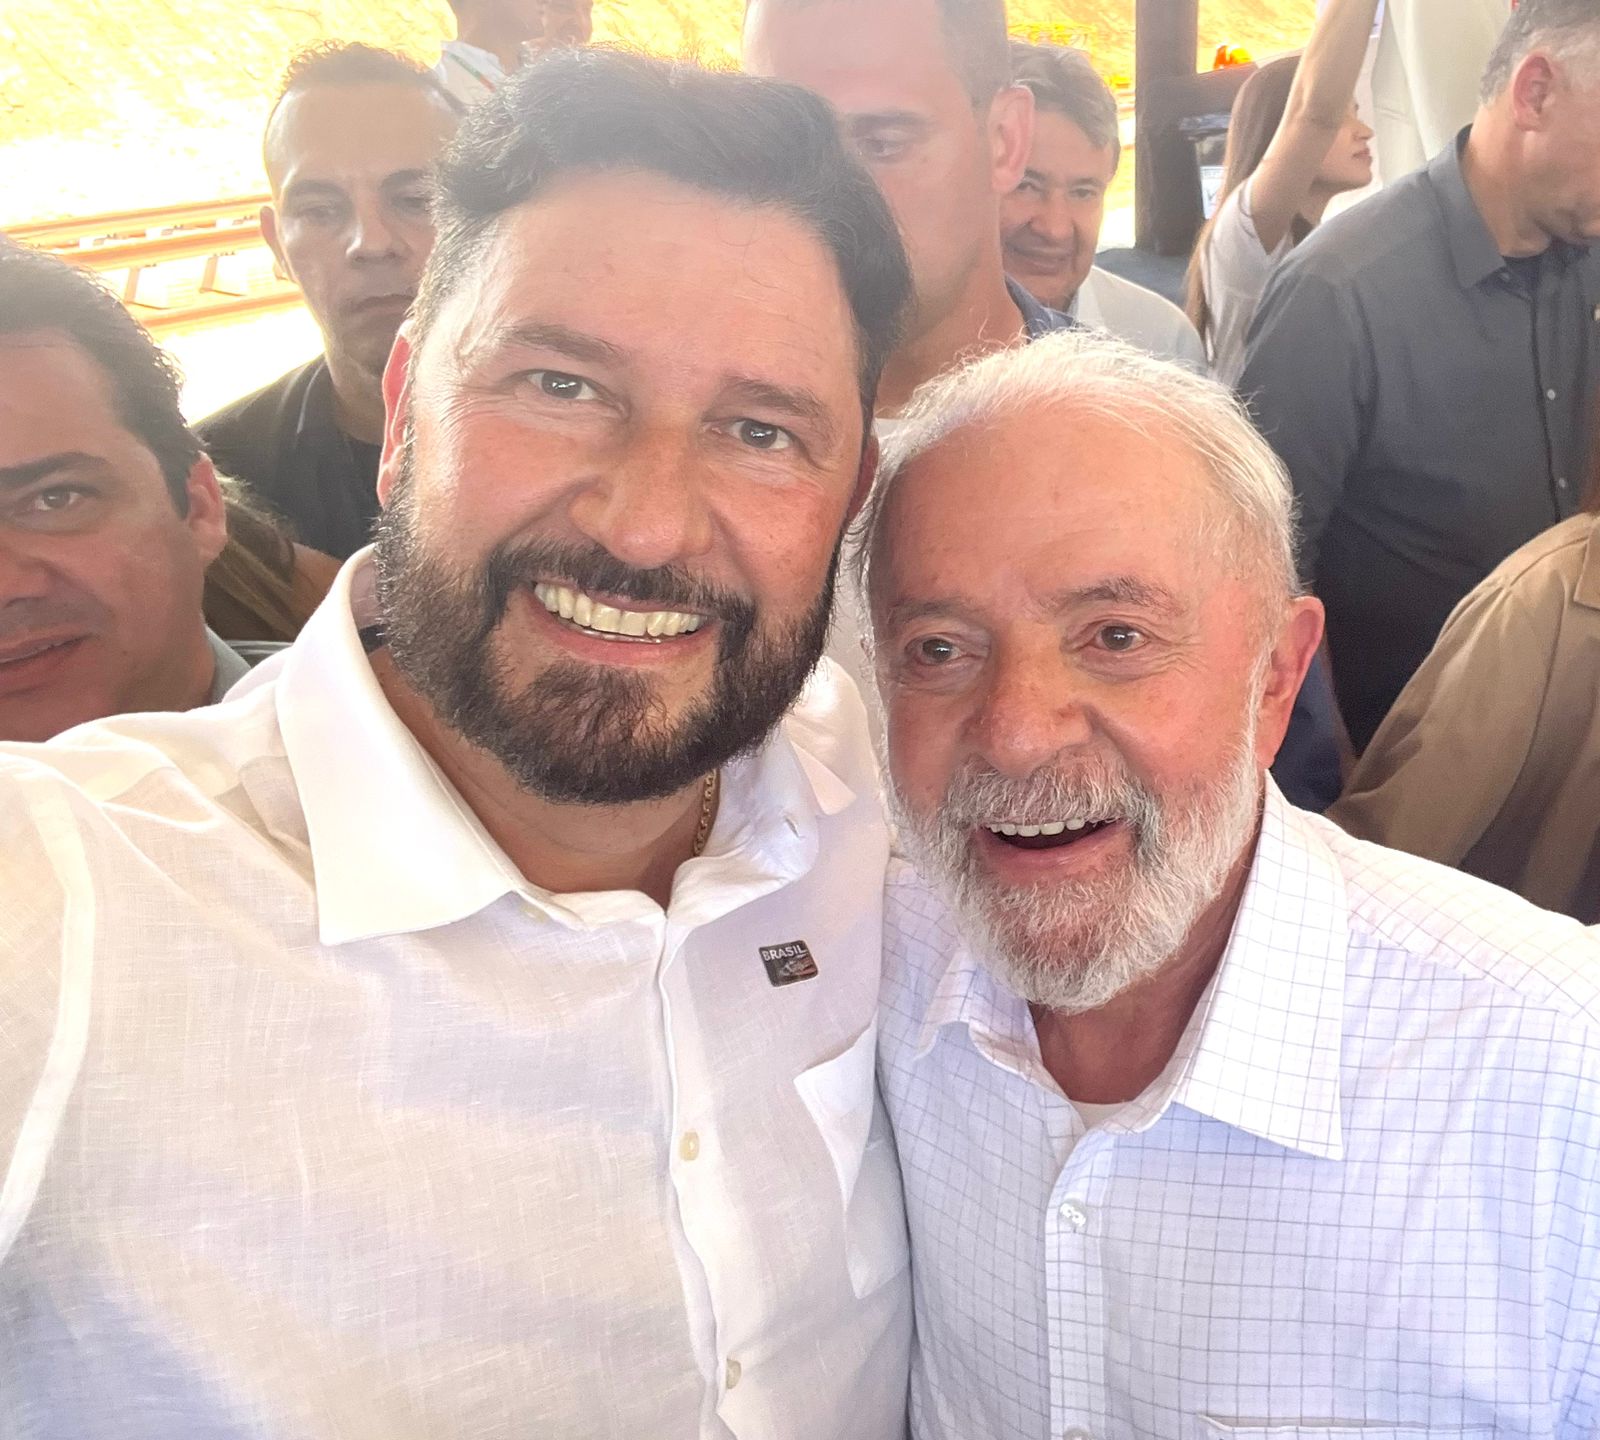 Em evento no Iguatu, Romeu Aldigueri publica foto ao lado de Lula e diz: “Maior presidente da história desse País”